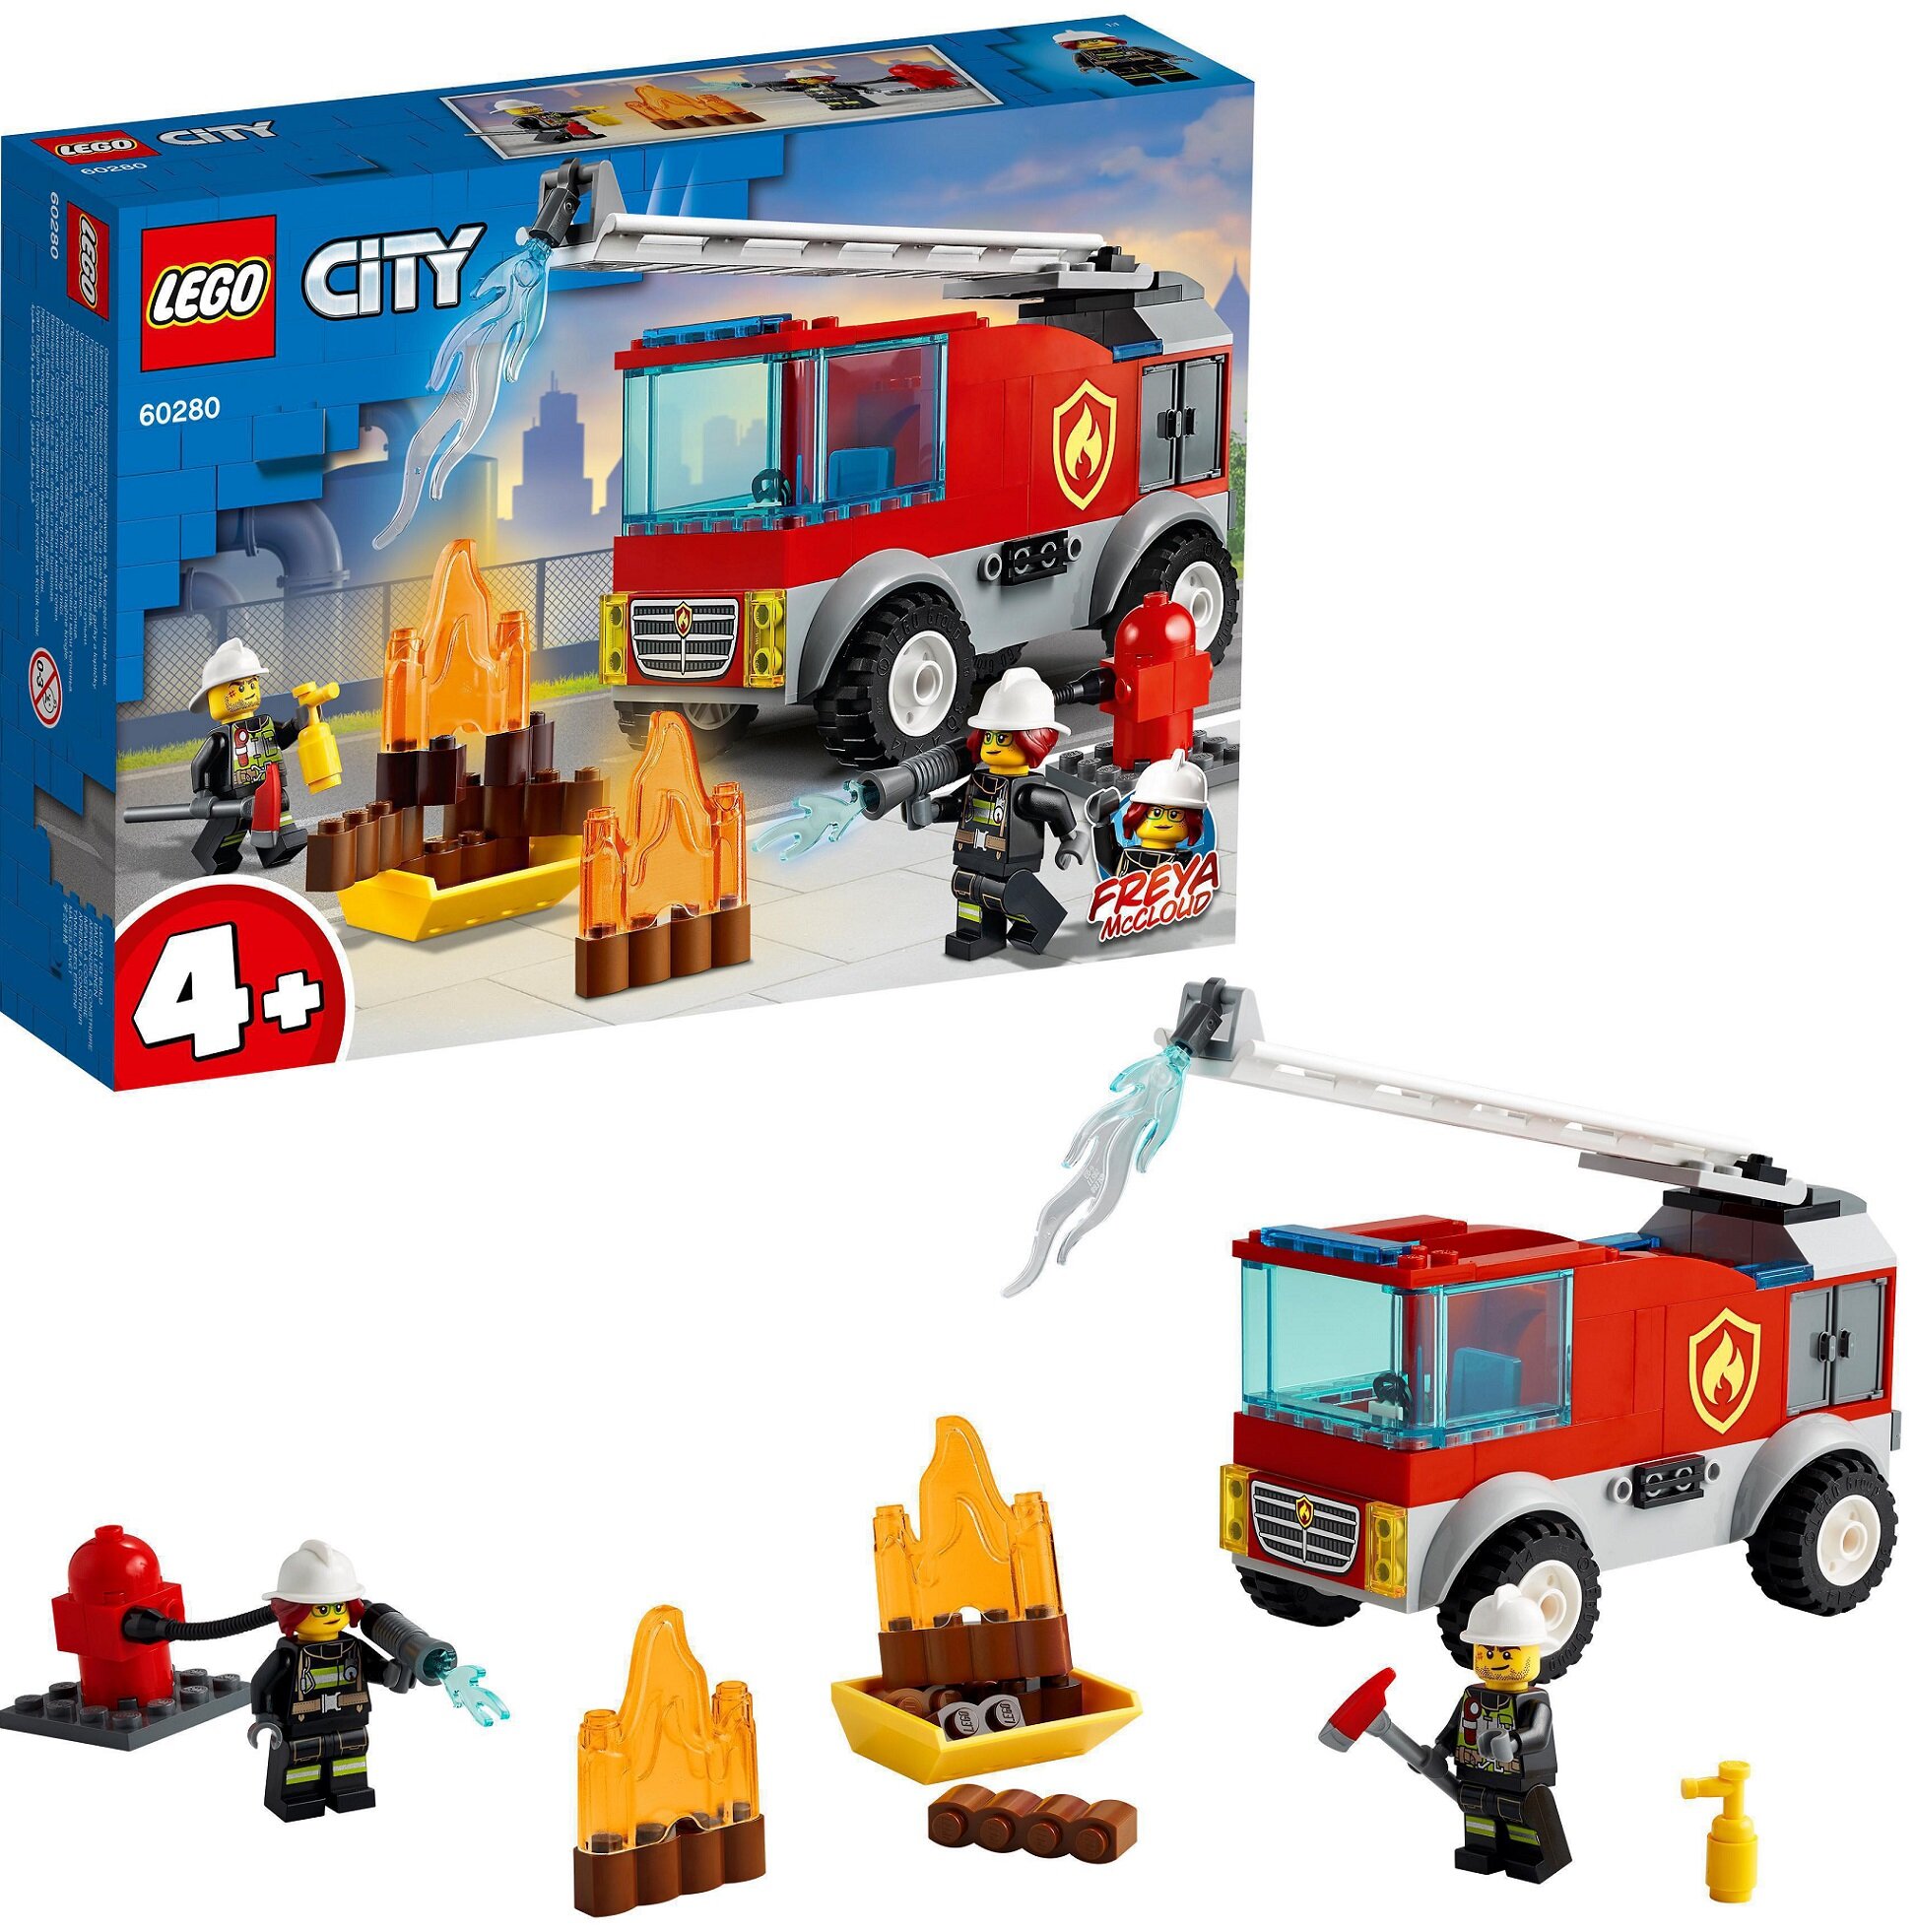 LEGO City Wóz strażacki z drabiną 60280 - ceny i opinie w Media Expert